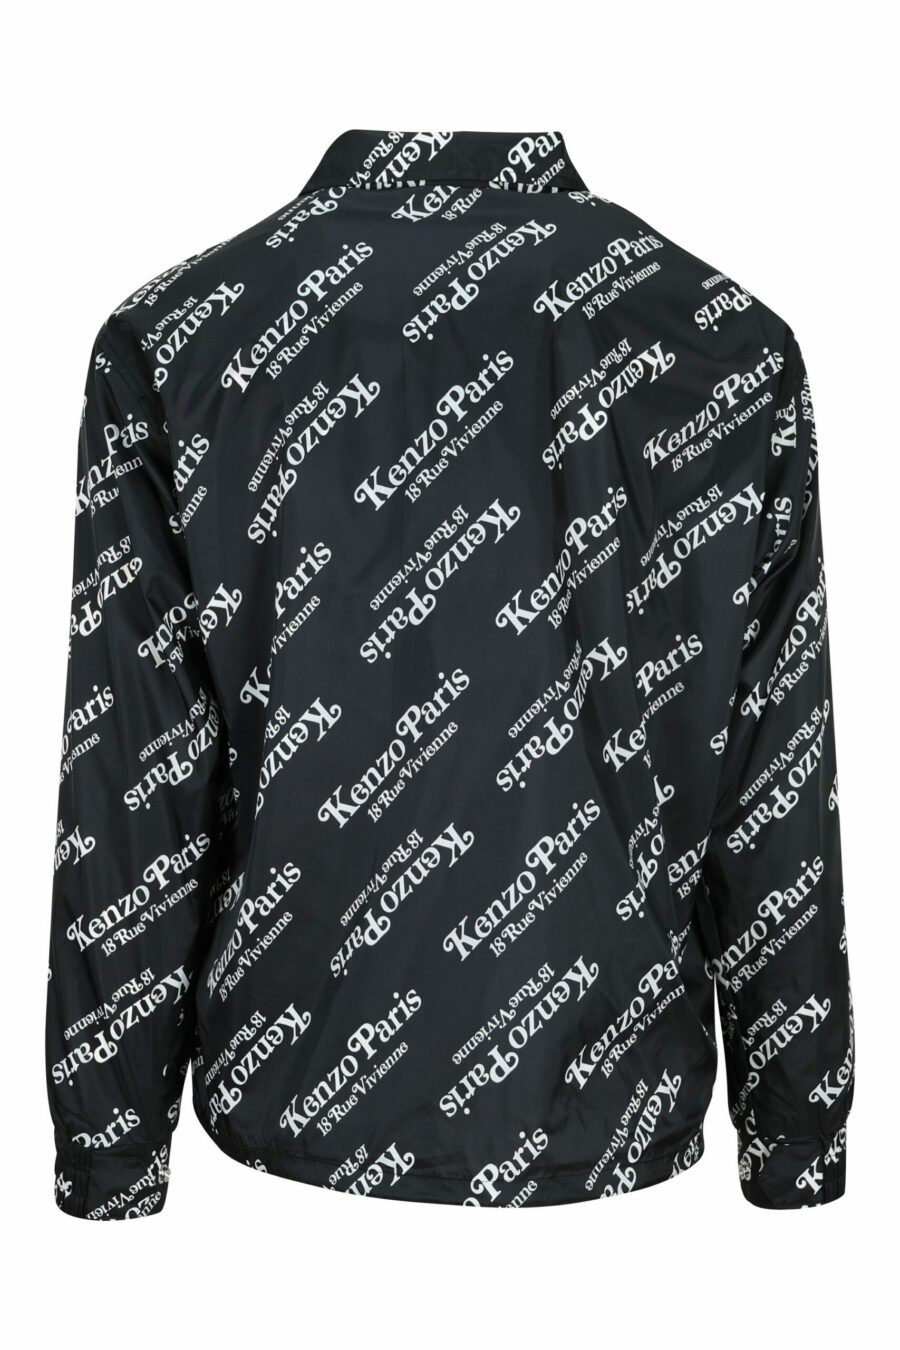 Logótipo do casaco preto "kenzo by verdy" - 3612230606845 1 à escala